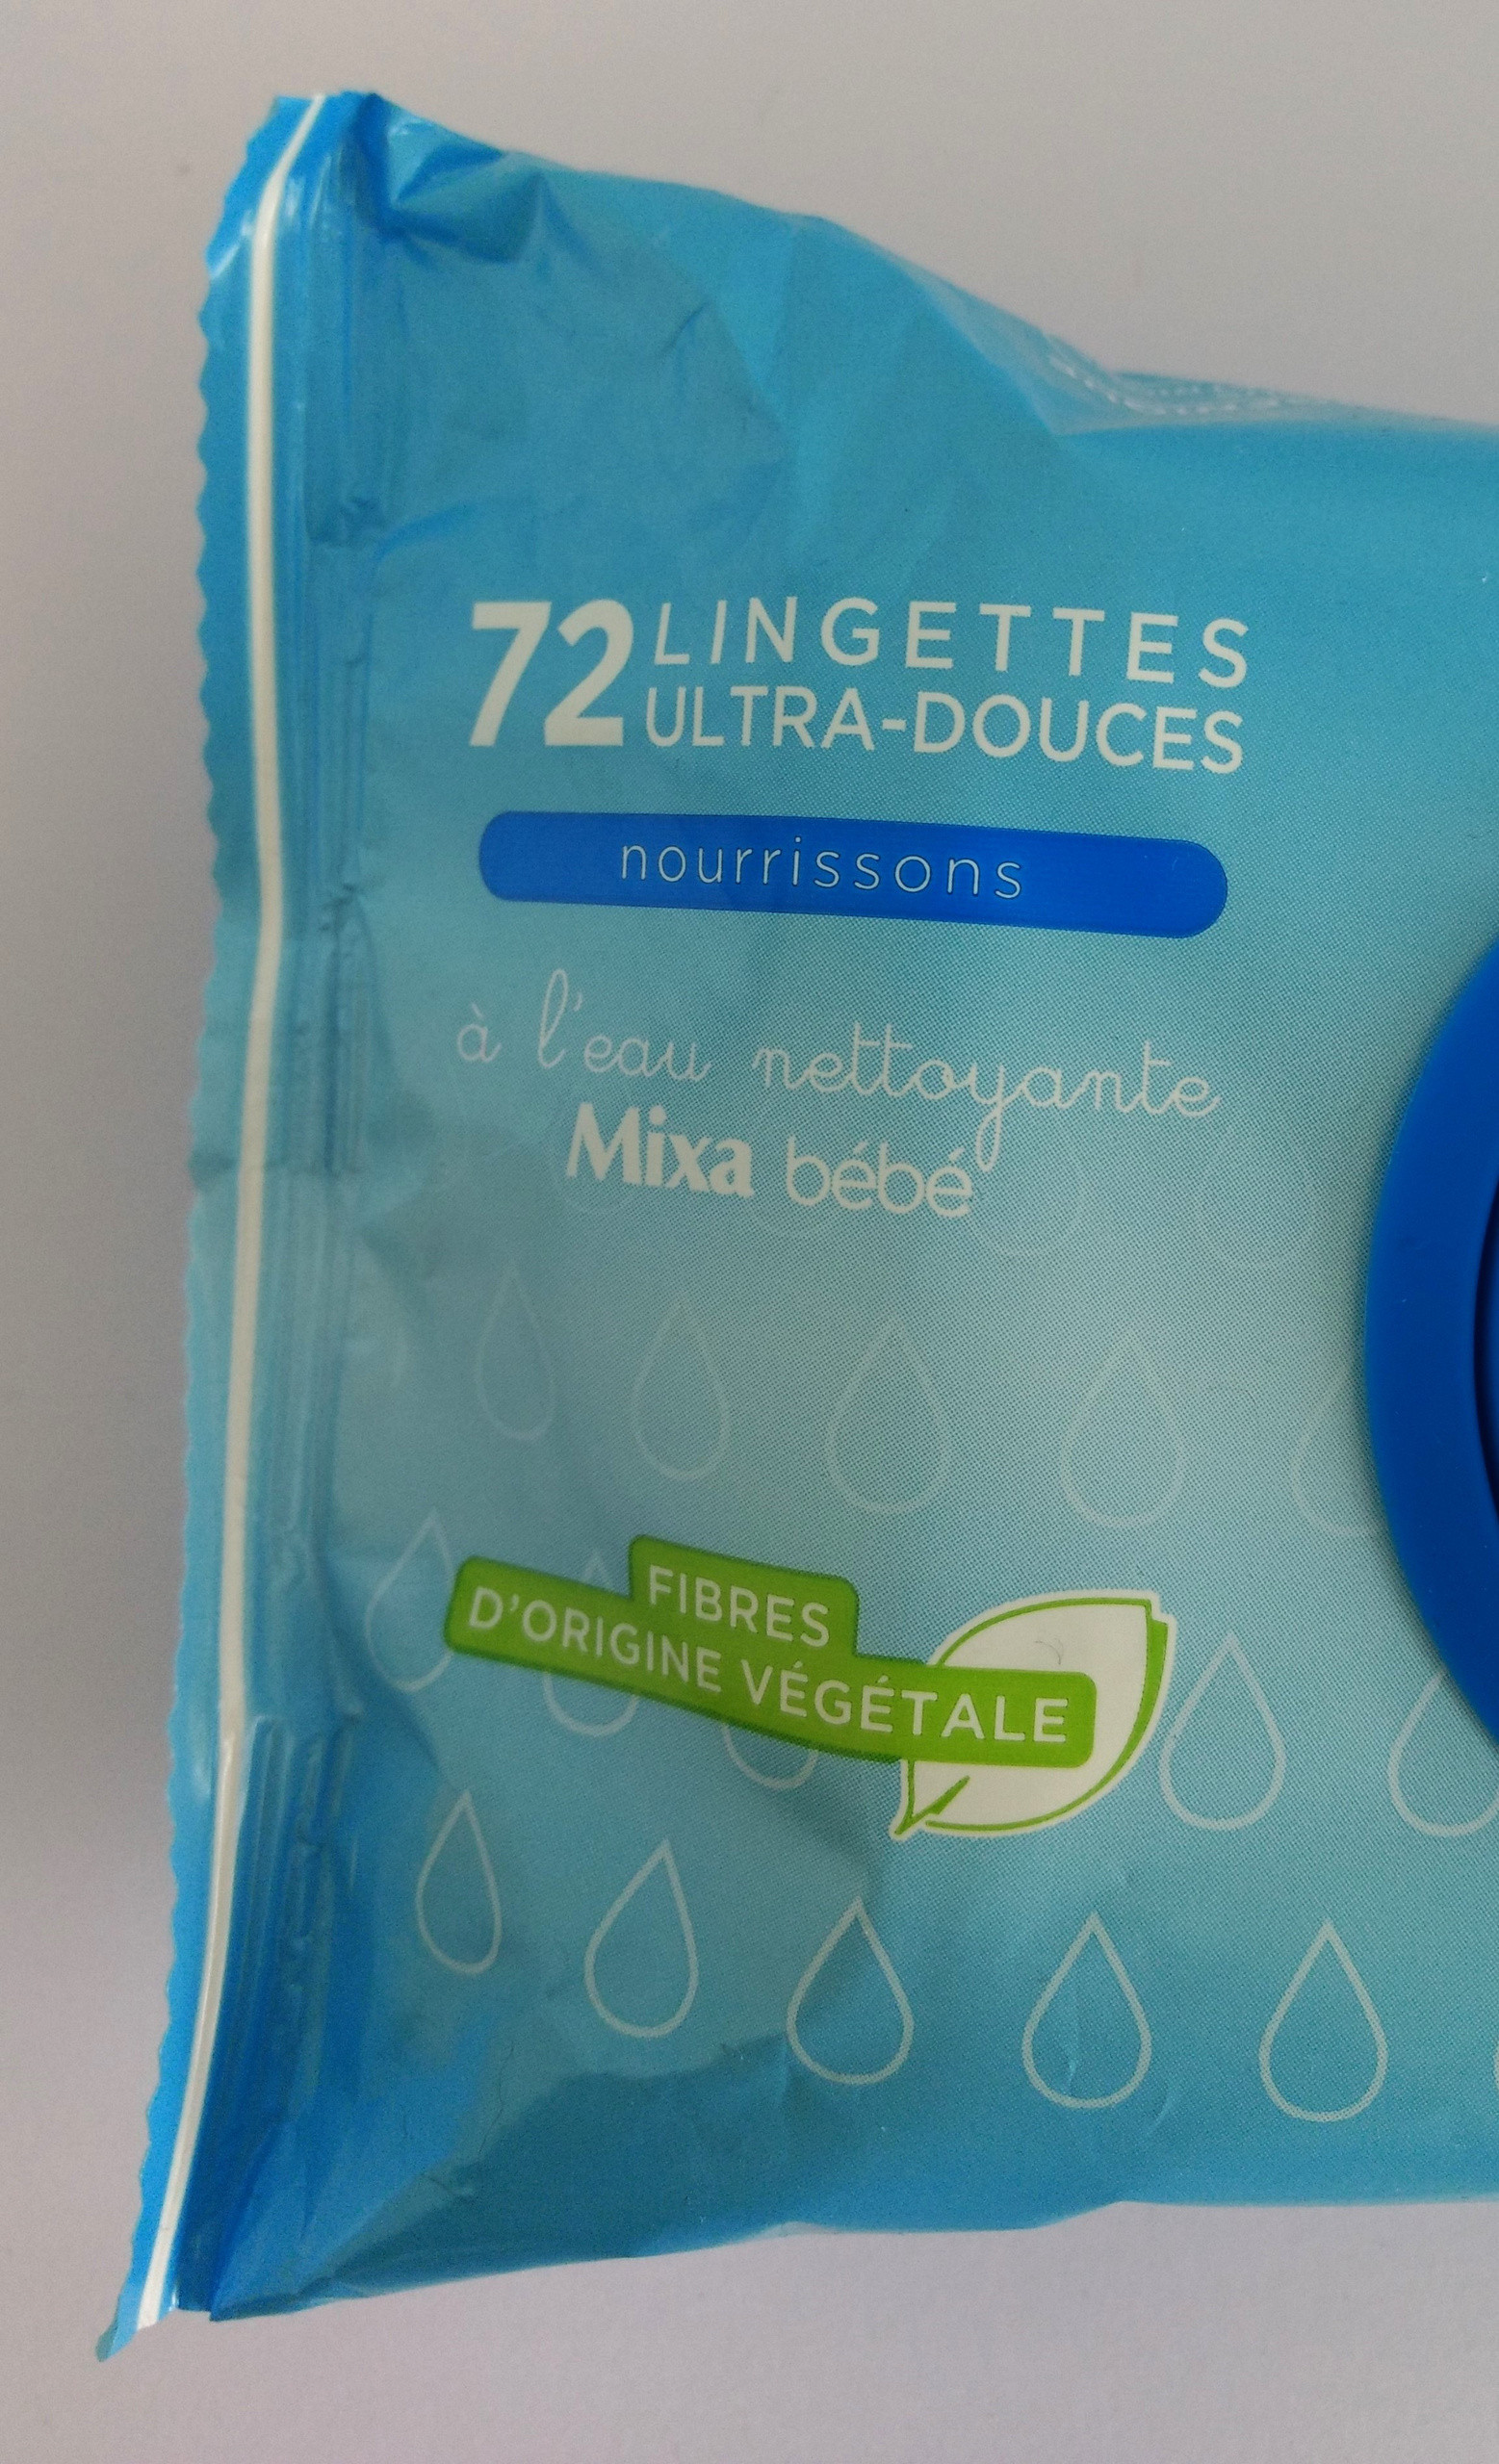 72 lingettes ultra douces nourrissons mixa bebe a l'eau nettoyante